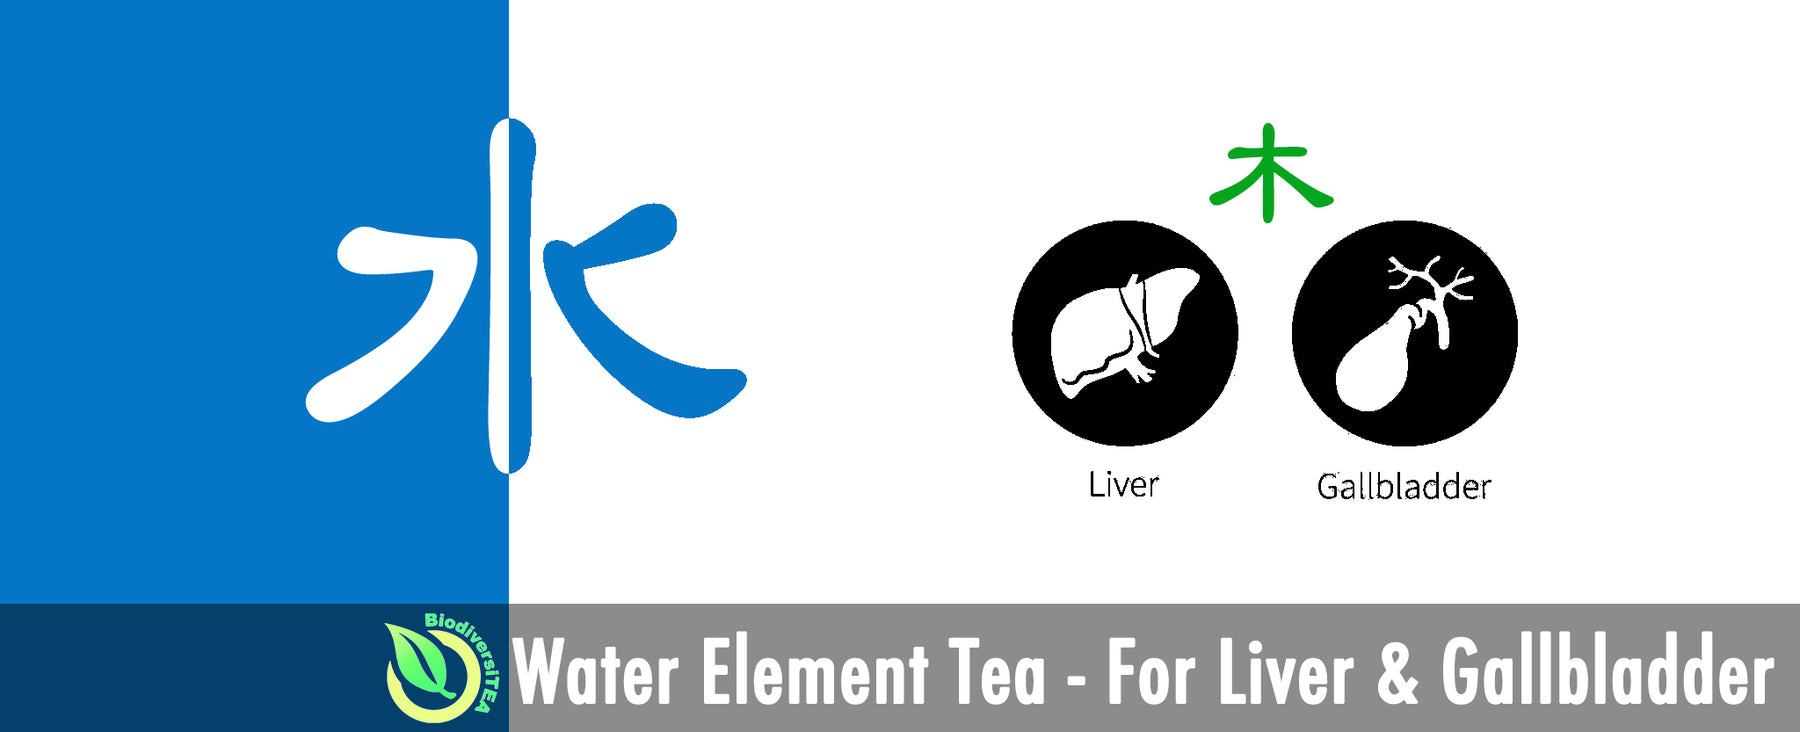 Water Element Tea - For Liver & Gallbladder